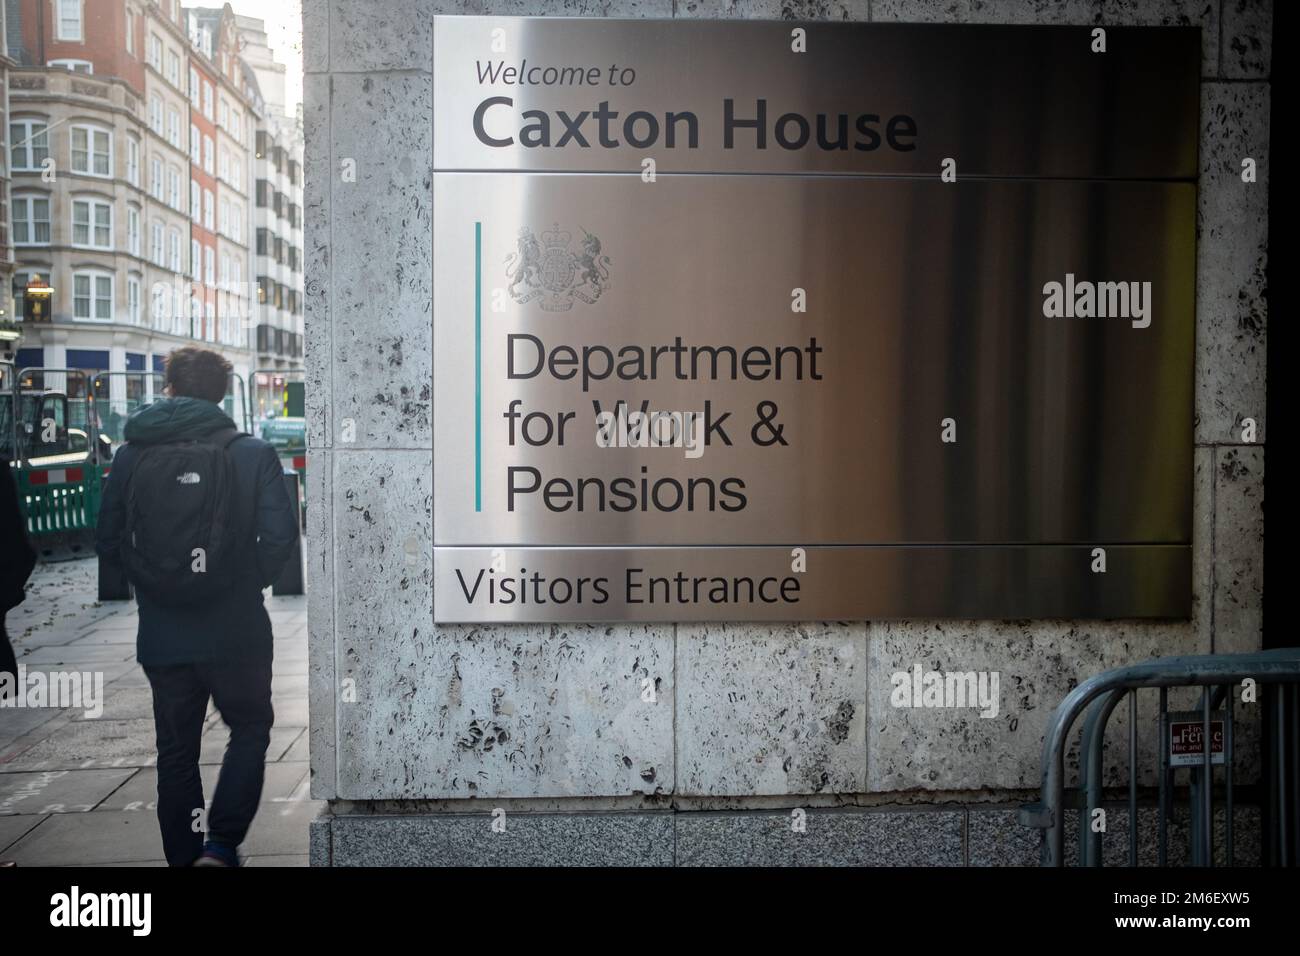 Londres - novembre 2022 : Département du travail et des pensions de la Maison Caxton à Westminster. Bâtiment du gouvernement du Royaume-Uni Banque D'Images